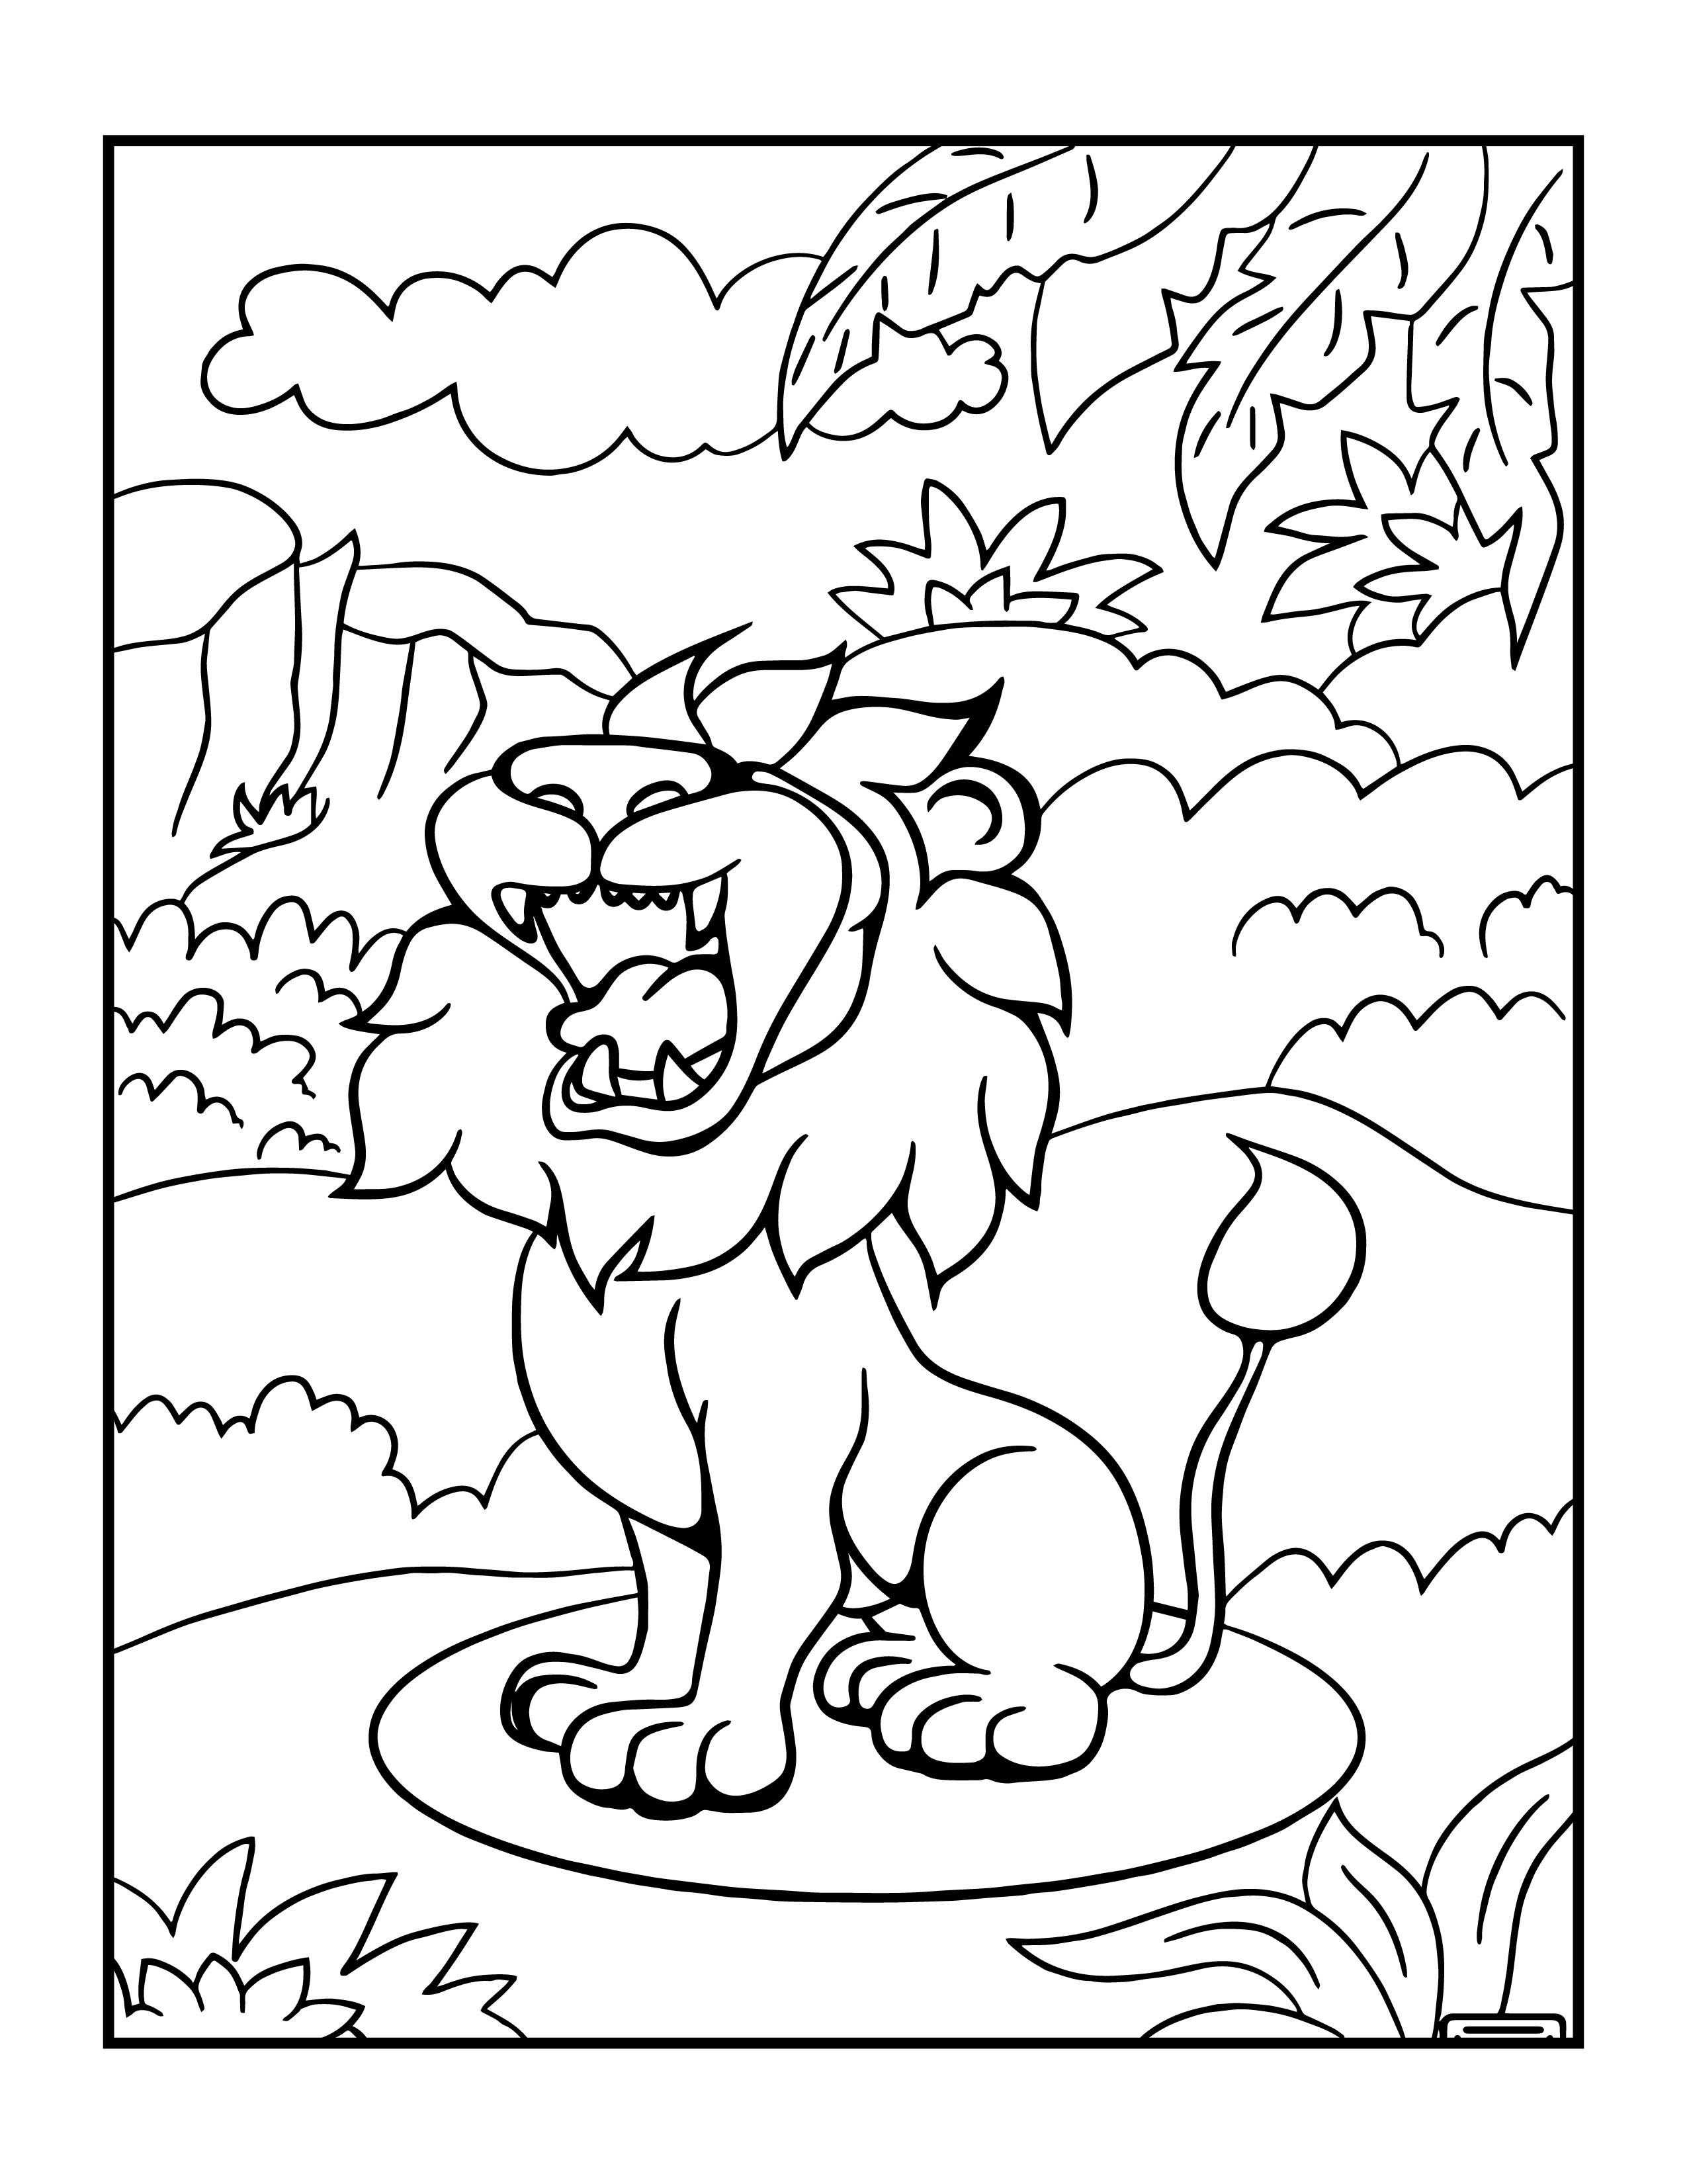 Disegno da colorare di leone per bambini